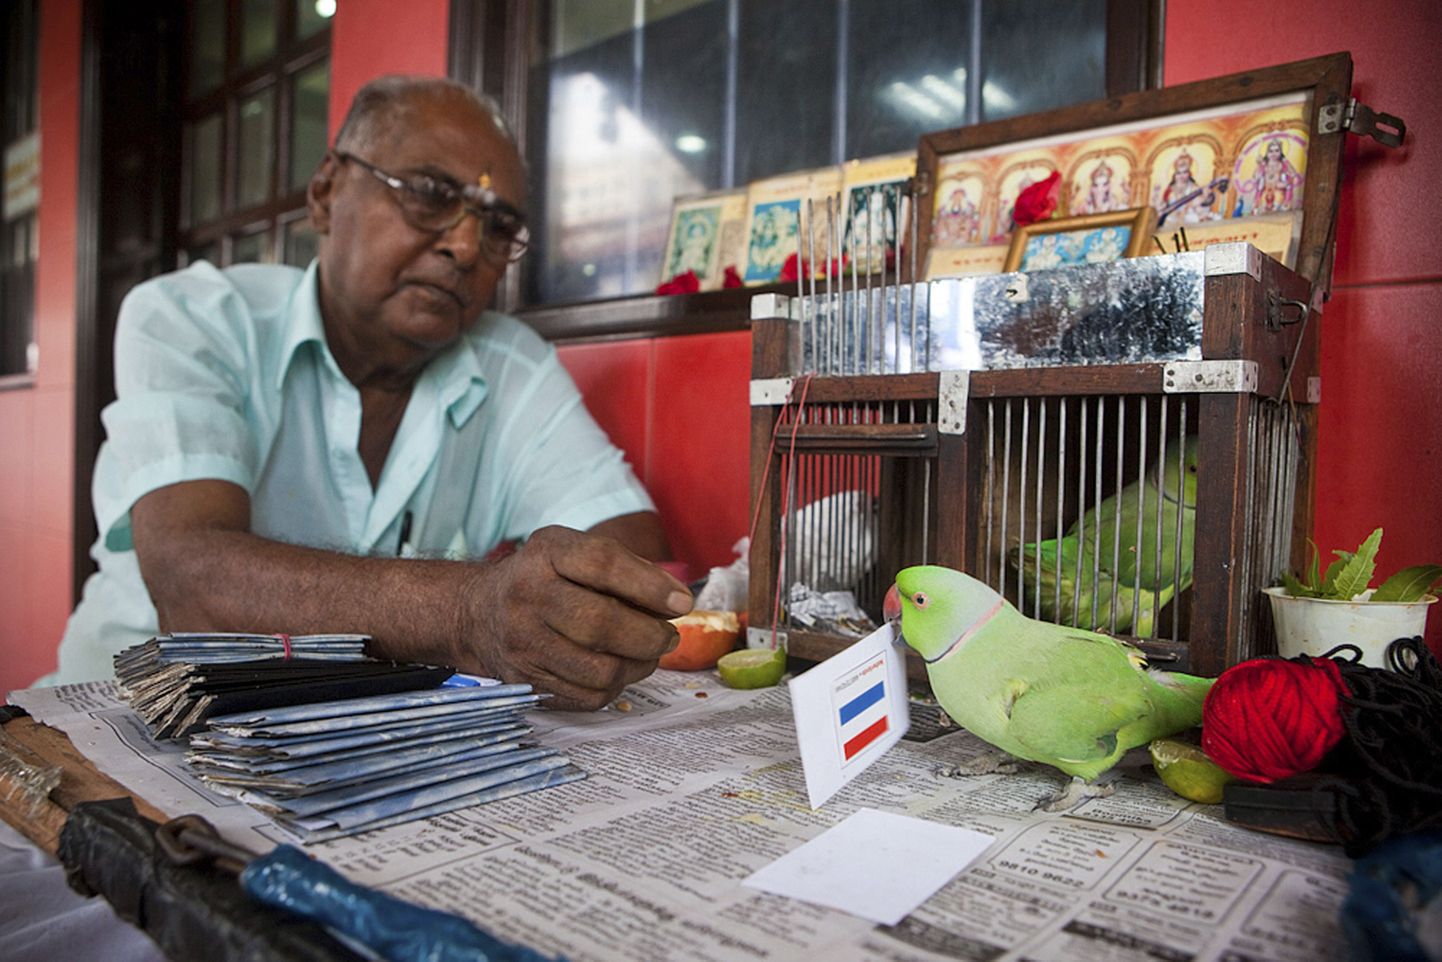 Singapuri jalgpallihuviline papagoi ennustab 10 singapuri dollari eest umbes 30-le inimesele päevas.